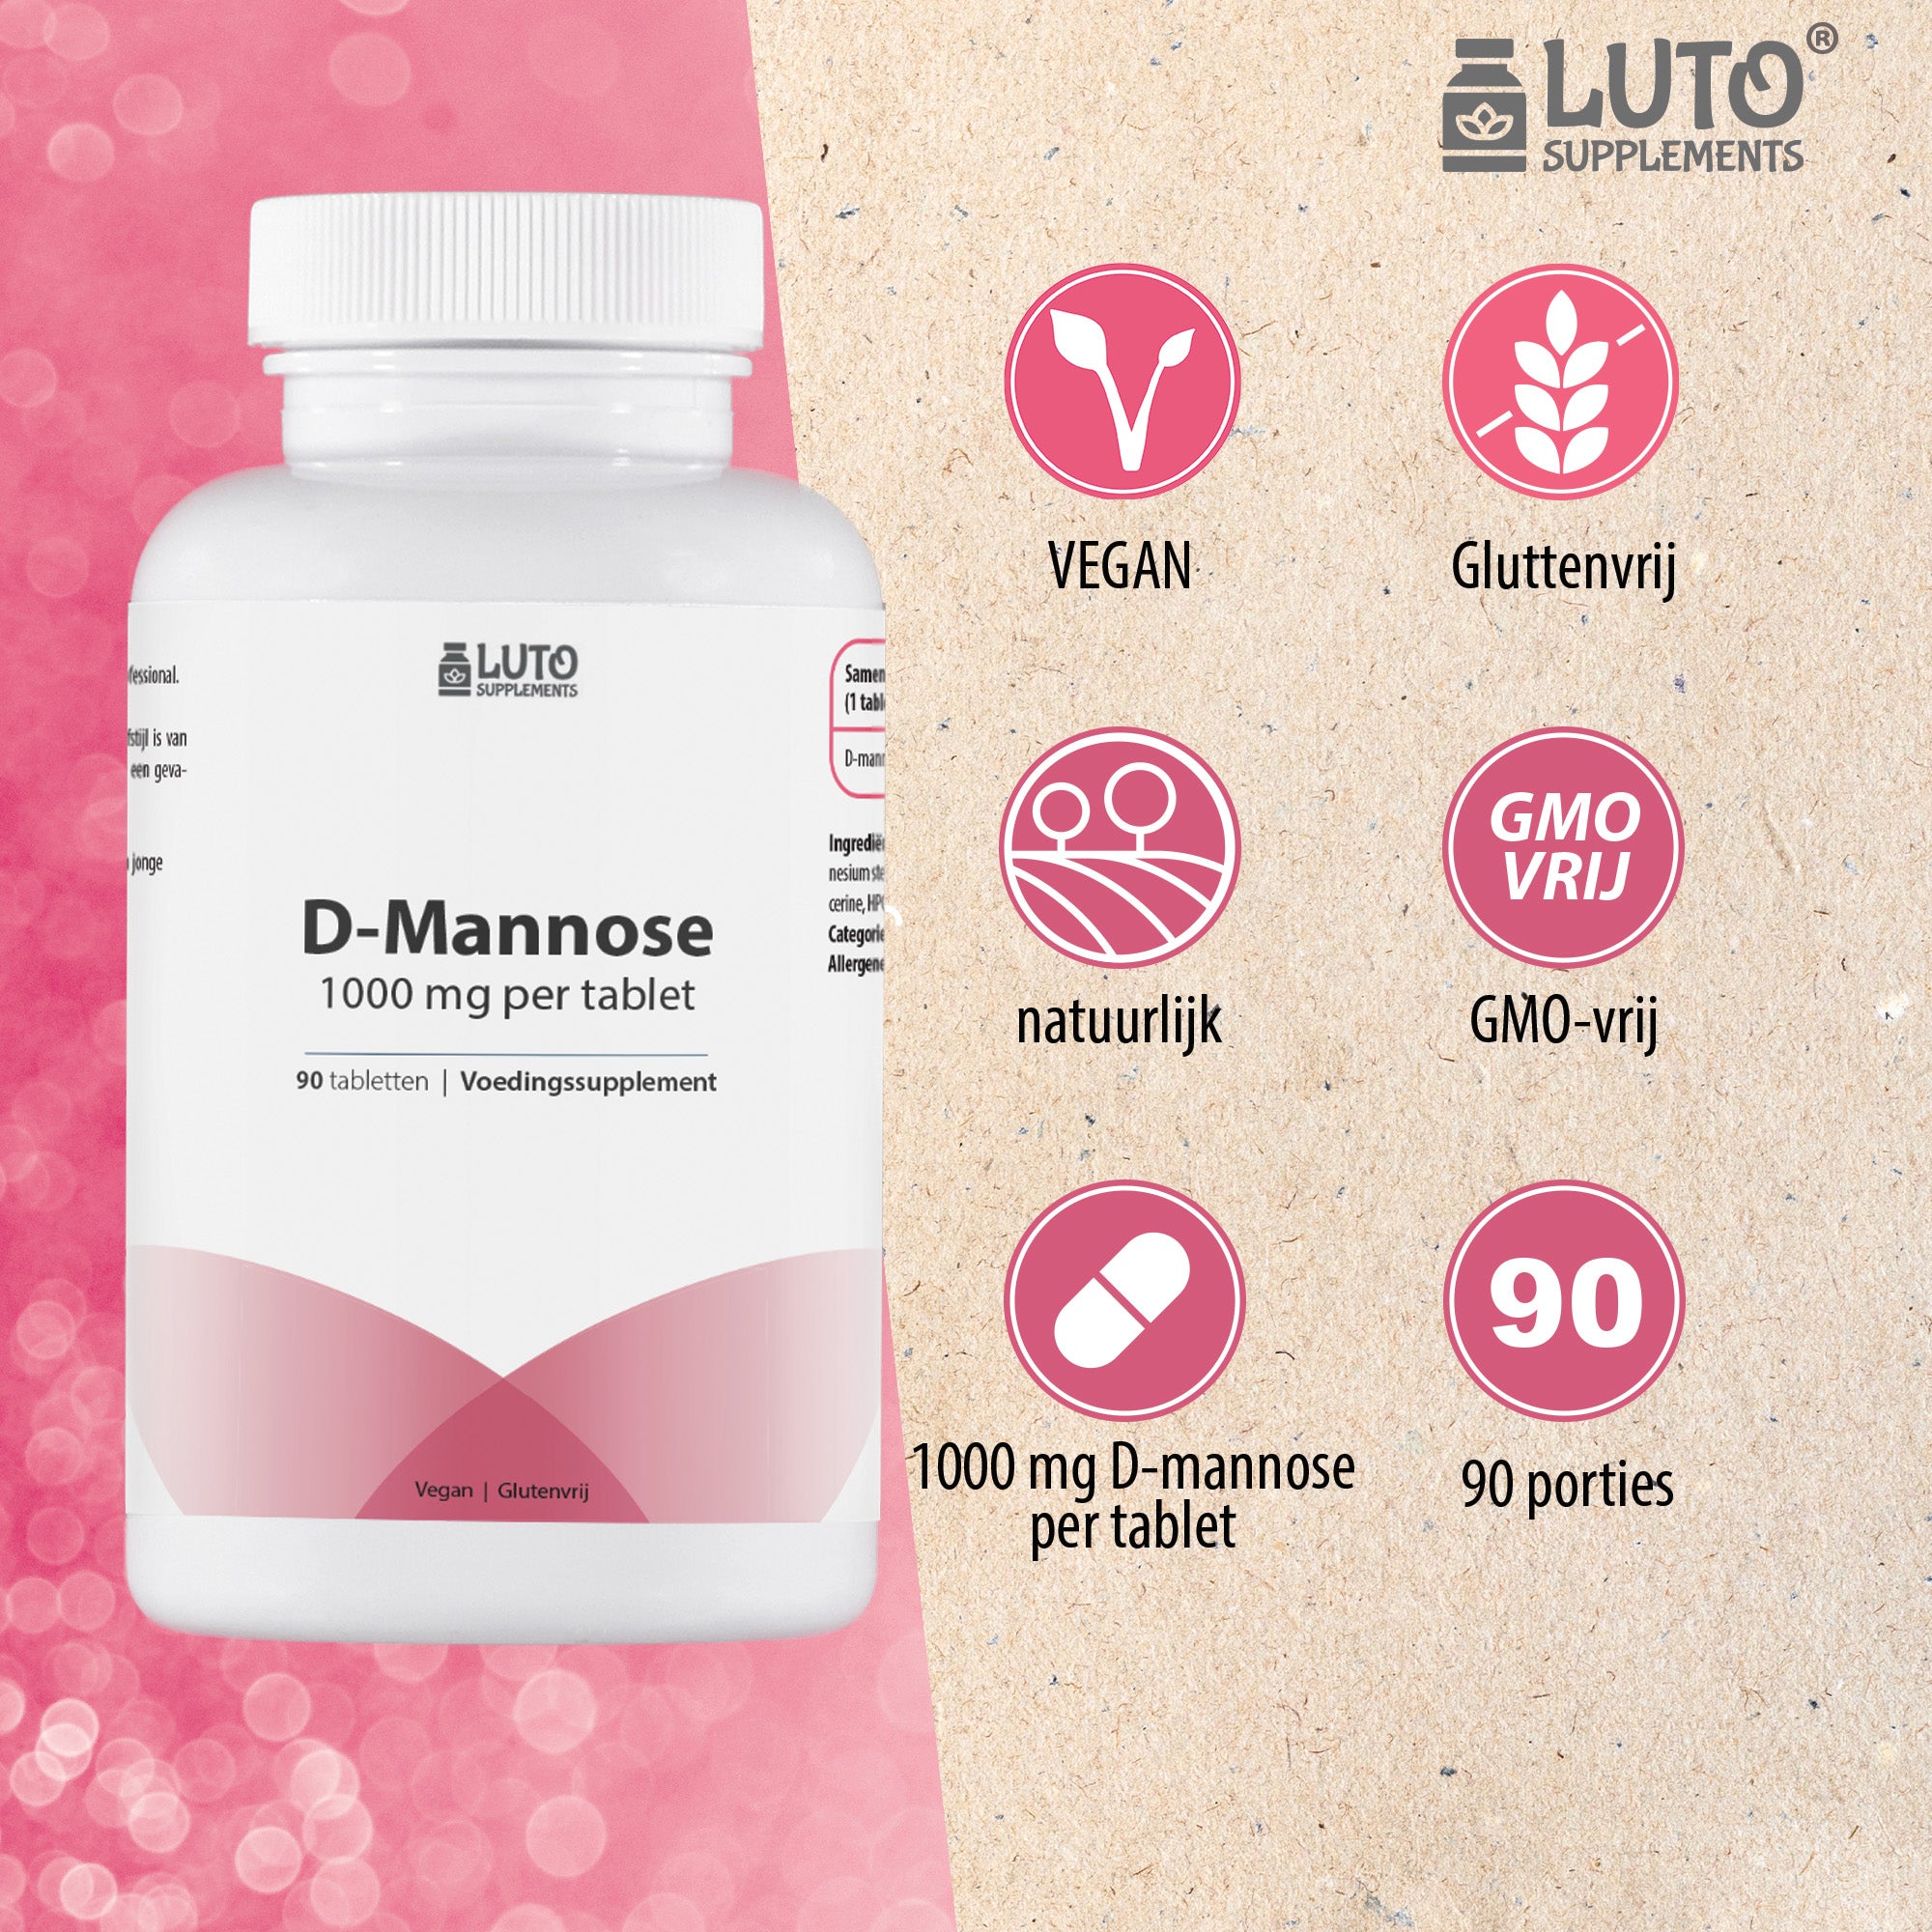 D-mannose tabletten | Hoog gedoseerd | 1000 mg per tablet | 90 porties per verpakking | Luto Supplements